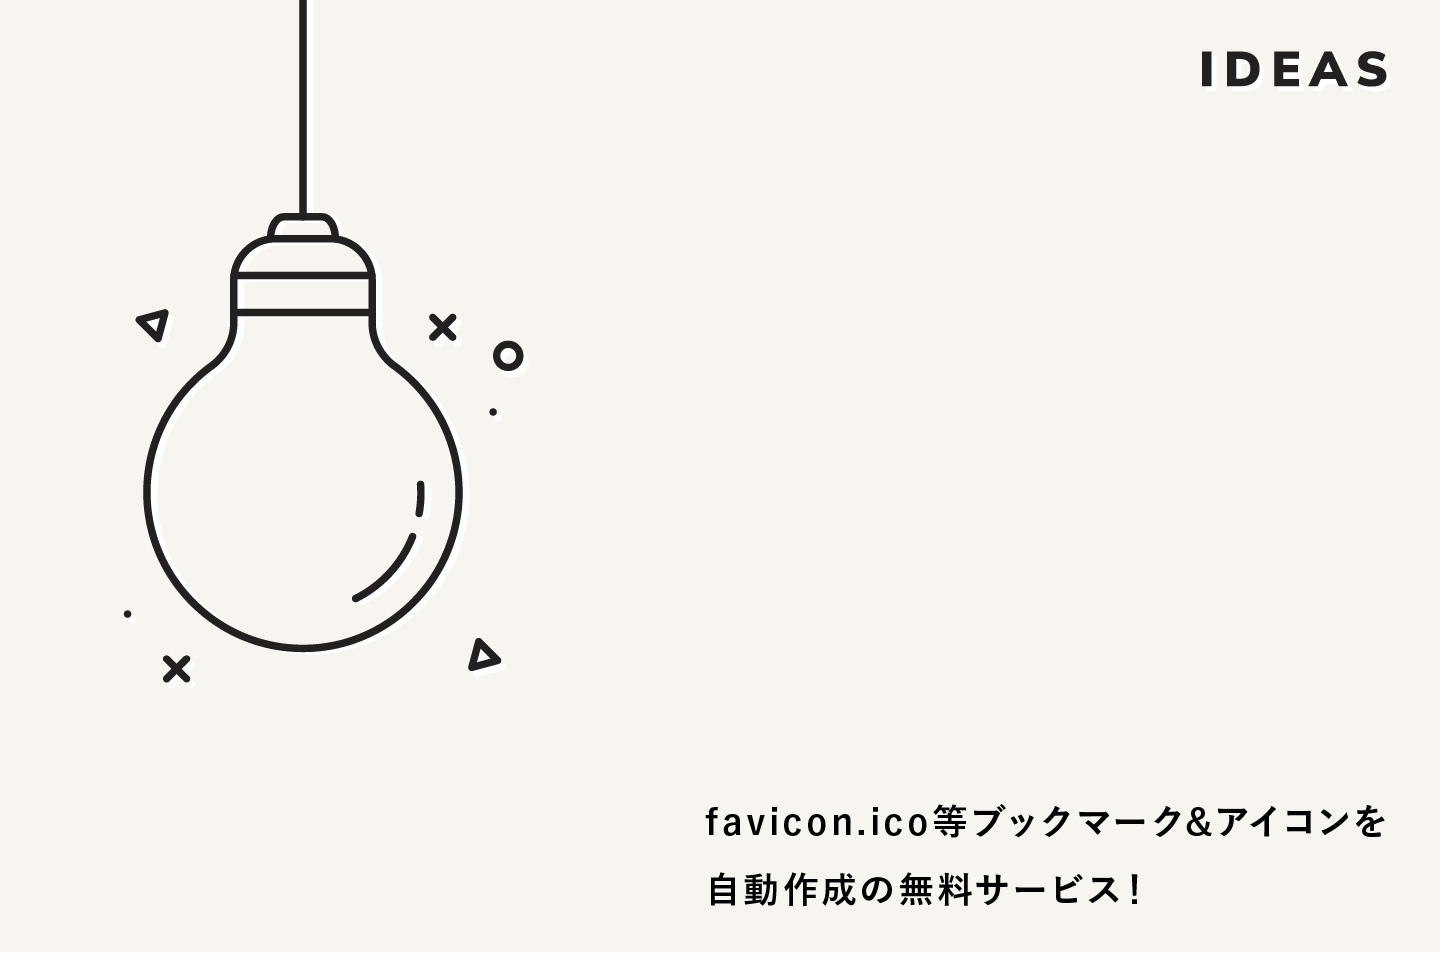 年版 Favicon Ico ブックマーク アイコンを自動作成の無料サービス Good Web Design